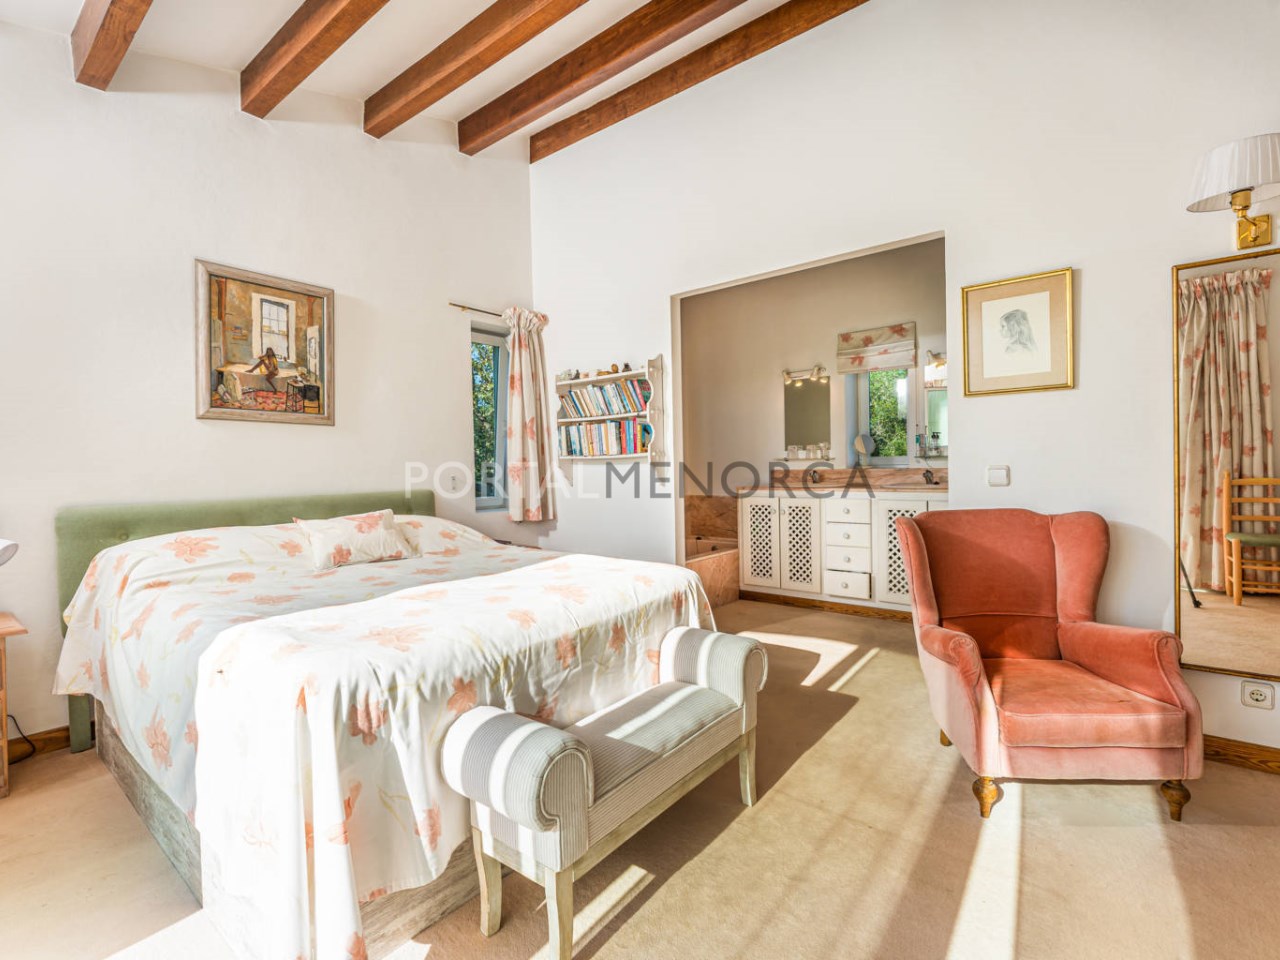 Casa de campo en venta en Menorca (57)